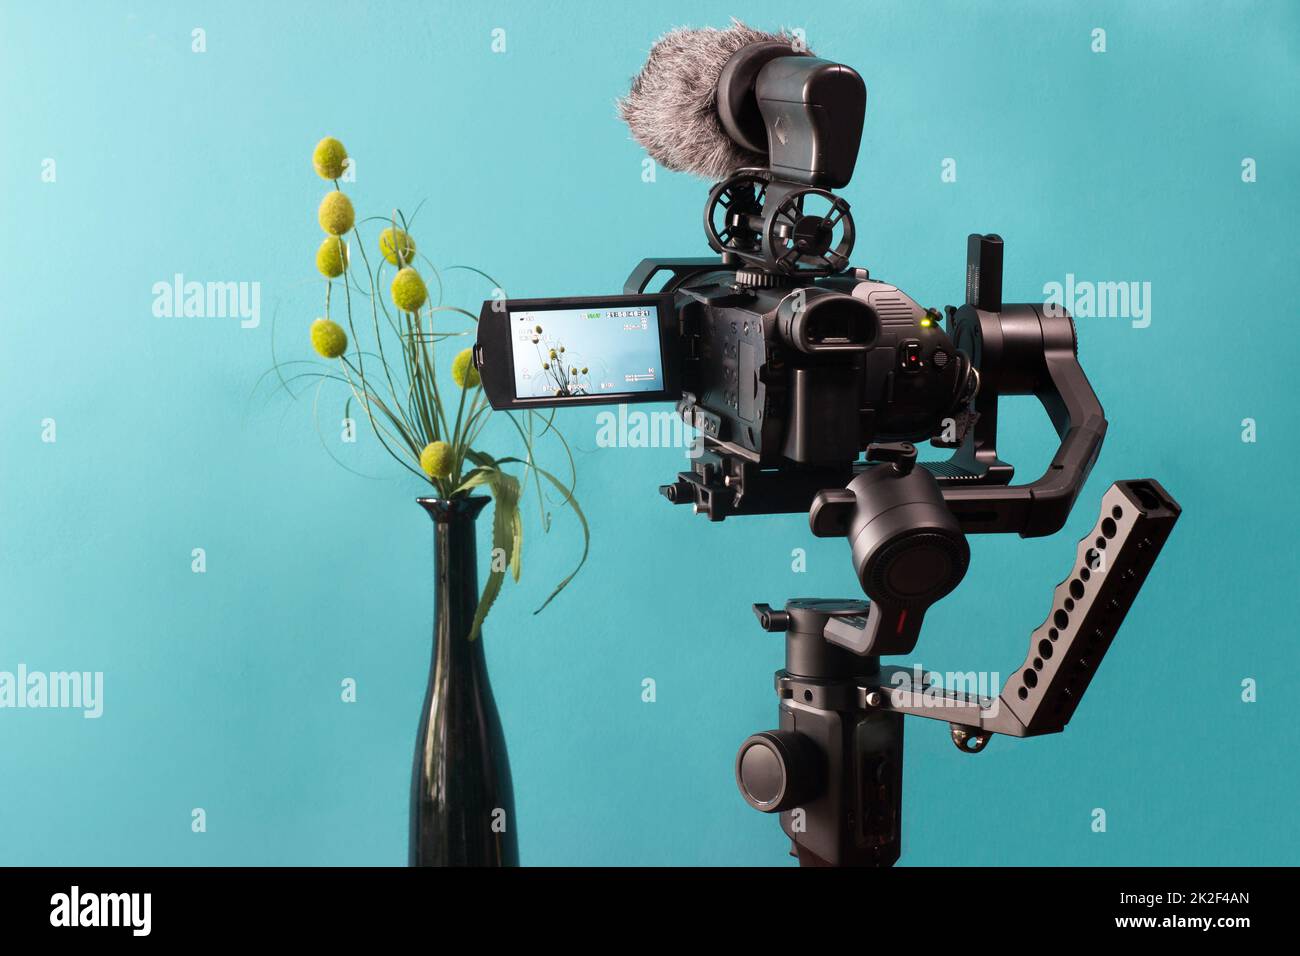 L'appareil photo de la nacelle tire des fleurs dans un vase Banque D'Images